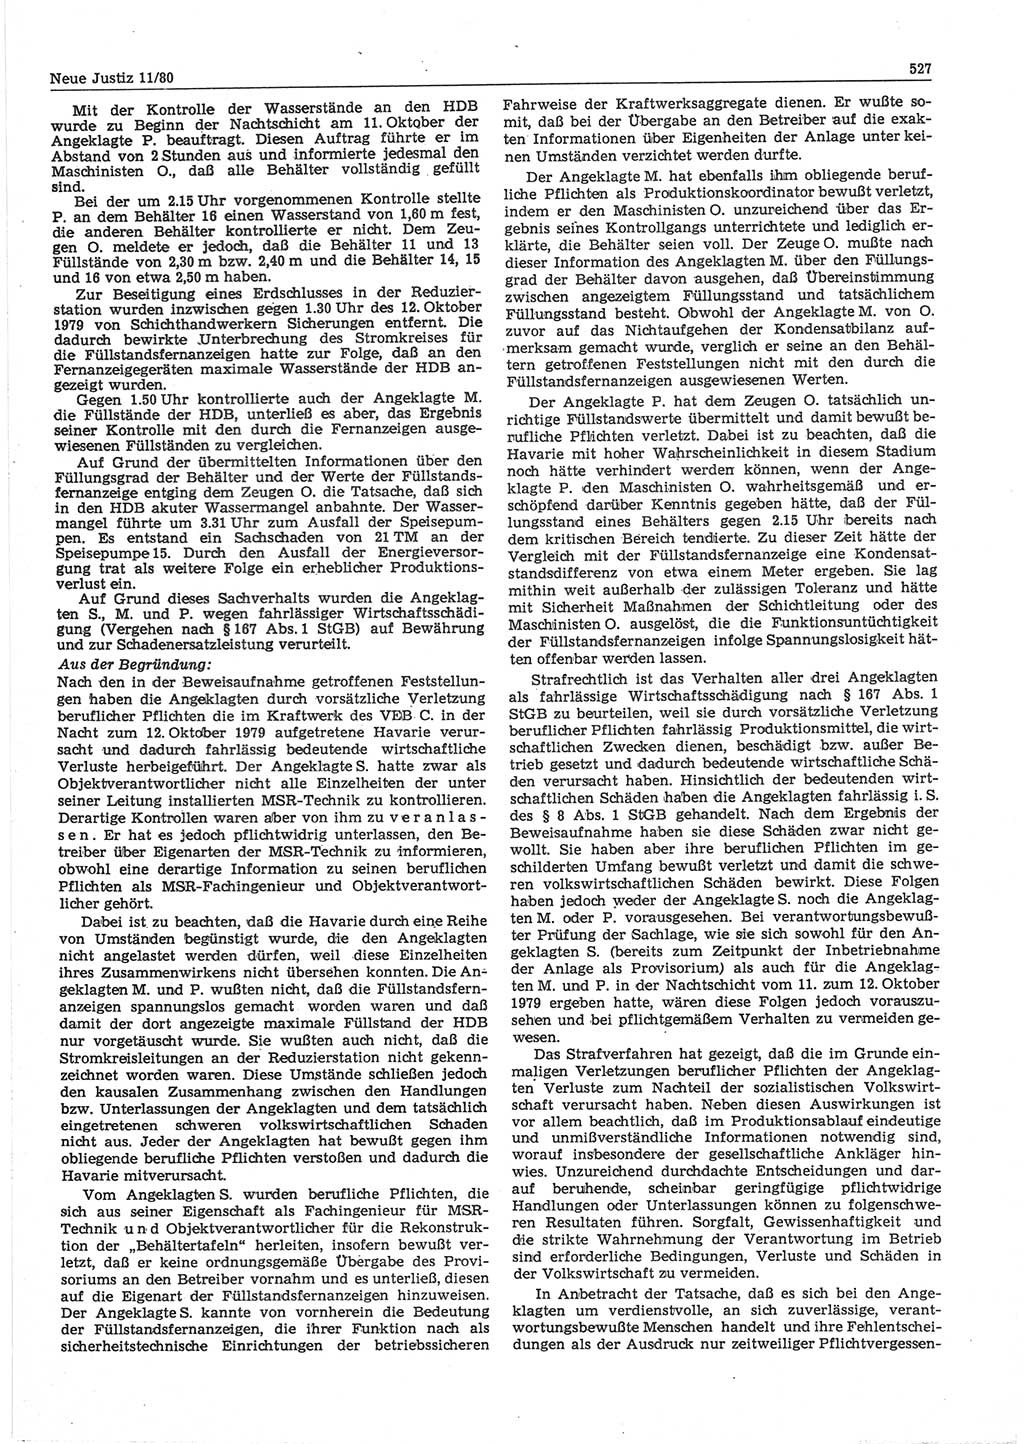 Neue Justiz (NJ), Zeitschrift für sozialistisches Recht und Gesetzlichkeit [Deutsche Demokratische Republik (DDR)], 34. Jahrgang 1980, Seite 527 (NJ DDR 1980, S. 527)